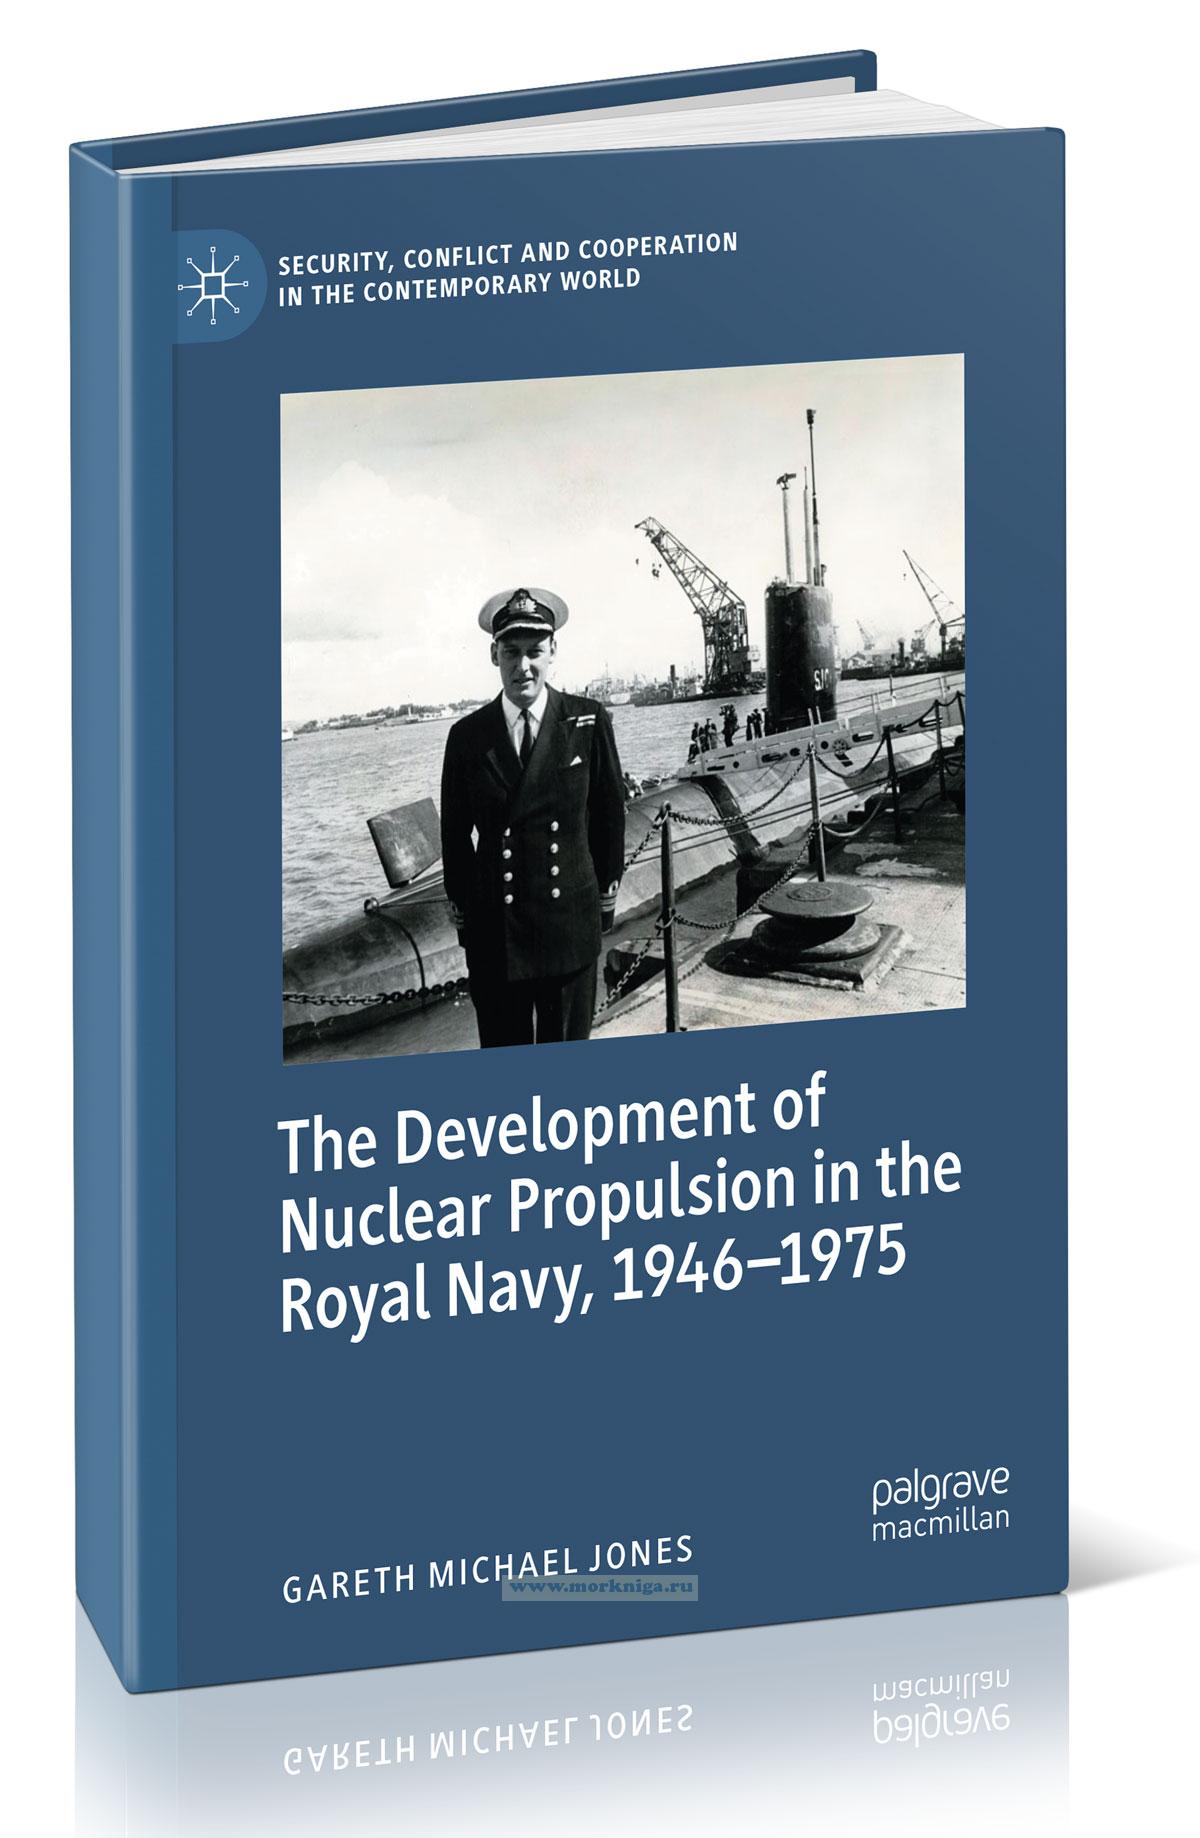 The Development of Nuclear Propulsion in the Royal Navy, 1946-1975/История разработки ядерной энергии в качестве двигателя в Королевском Военно-Морском флоте, 1946-1975 гг.